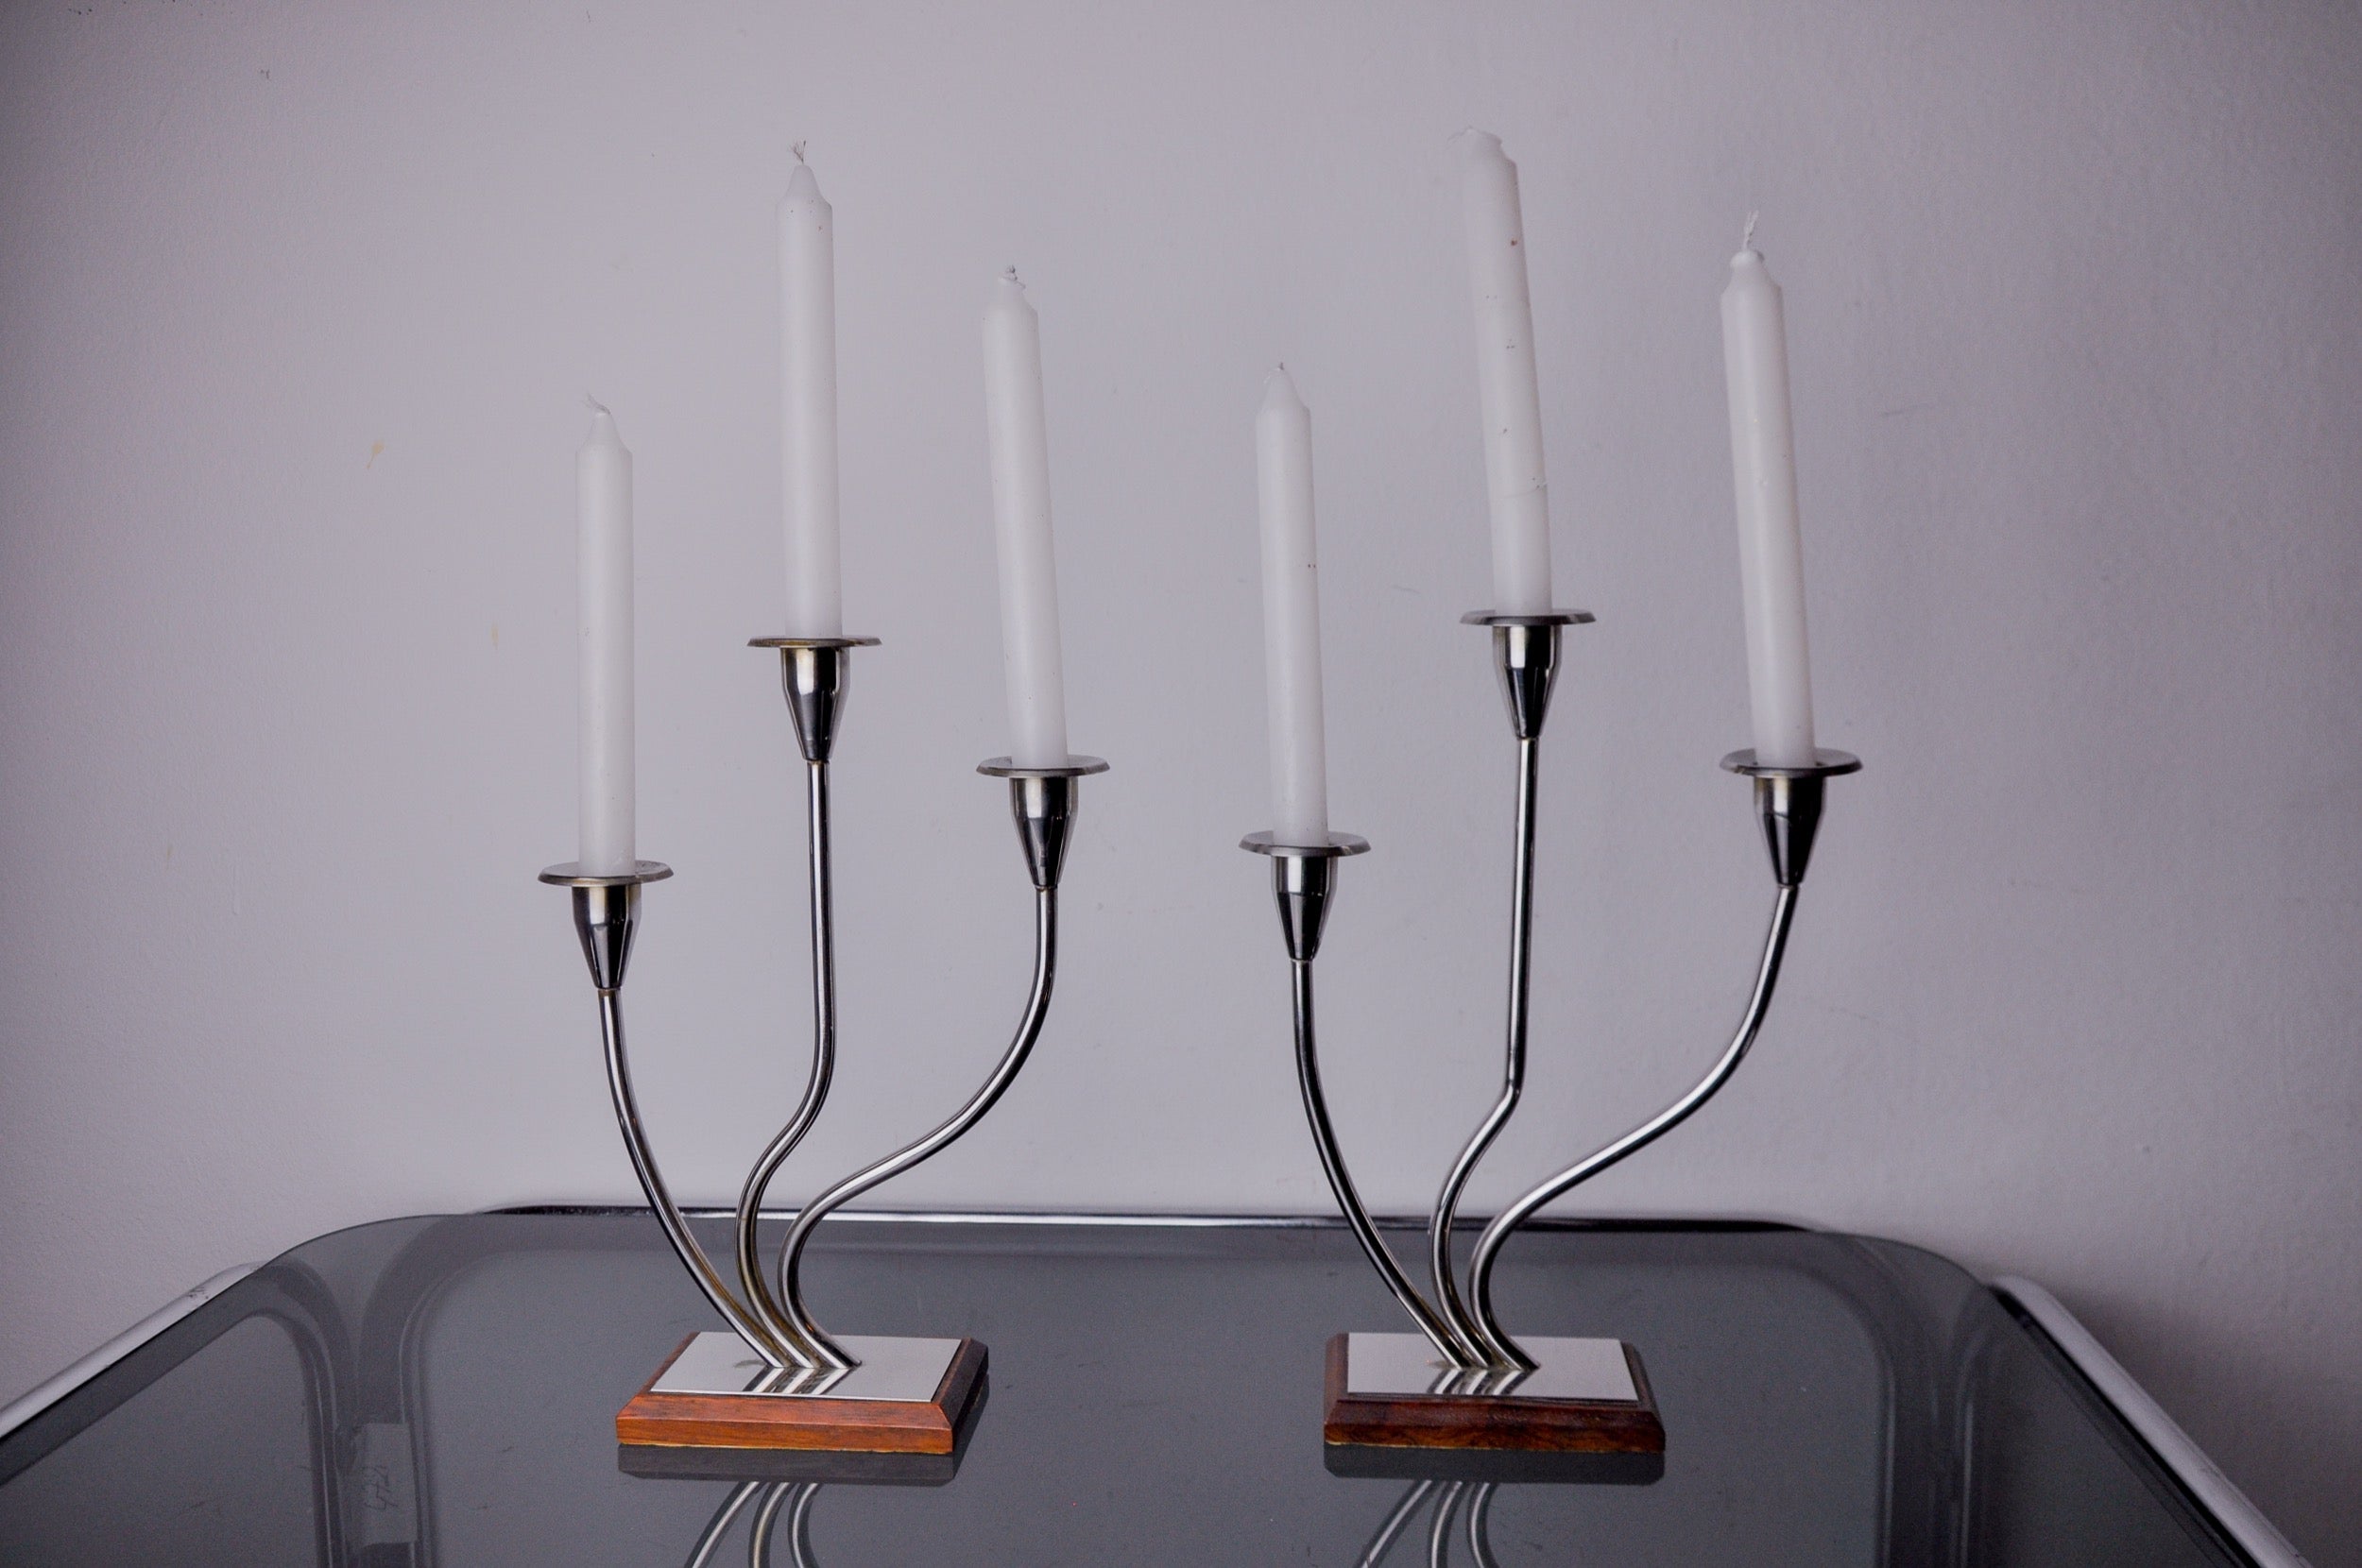 Sehr schönes Paar Art-Deco-Kerzenhalter aus Edelstahl und Palisanderholz, entworfen und hergestellt in Spanien in den 1970er Jahren. Struktur aus rostfreiem Stahl 18/8, die 3 Kerzen aufnehmen kann. Hervorragendes Designobjekt, das Ihr Interieur